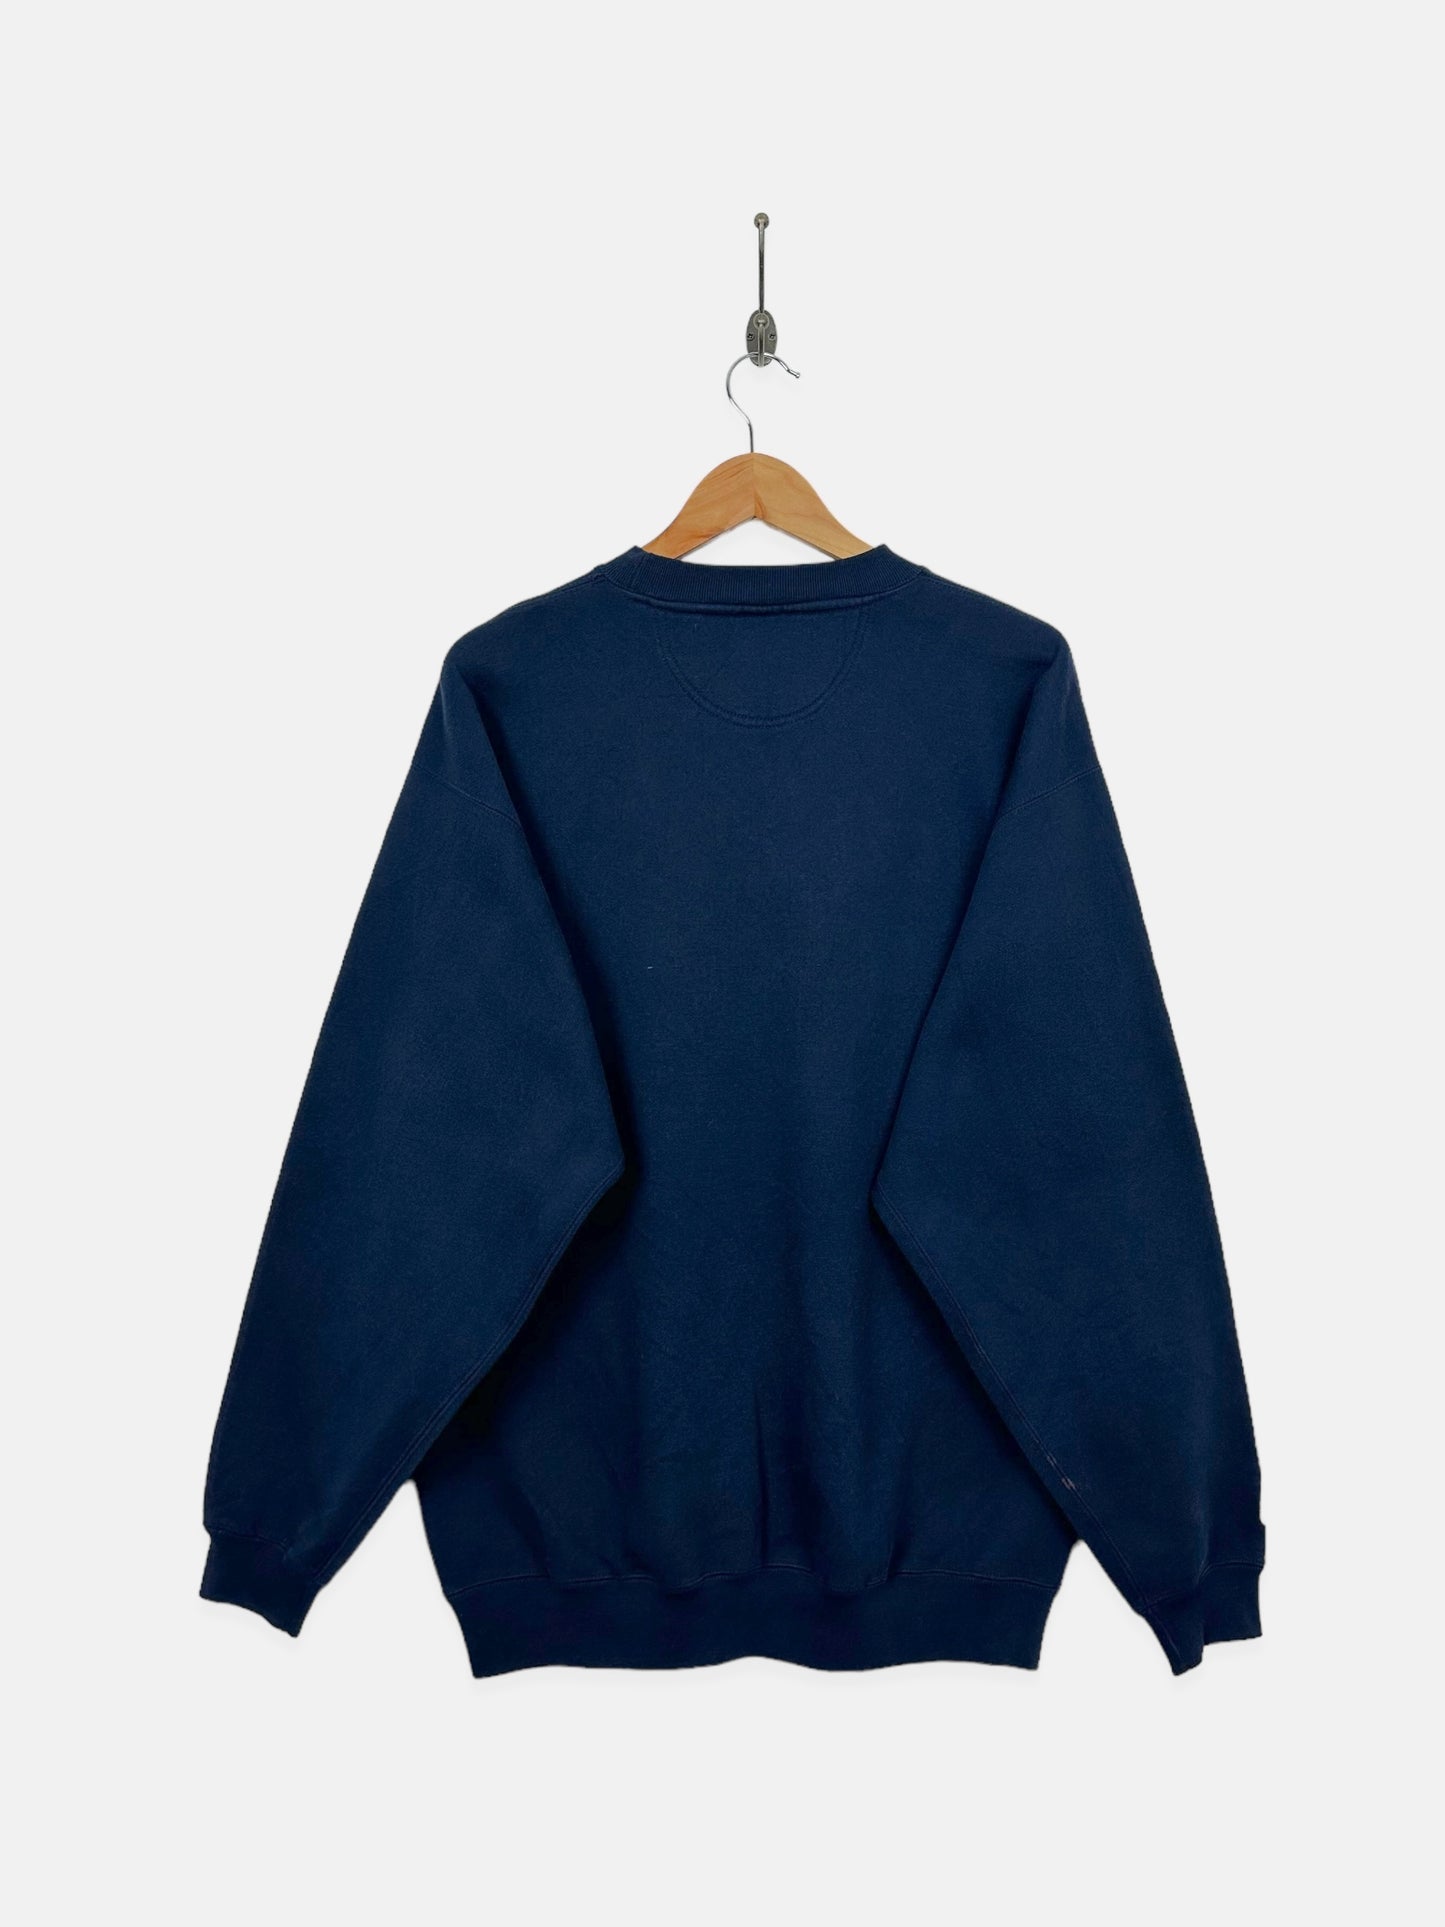 90's Denver Broncos NFL Embroidered Vintage Sweatshirt Size L